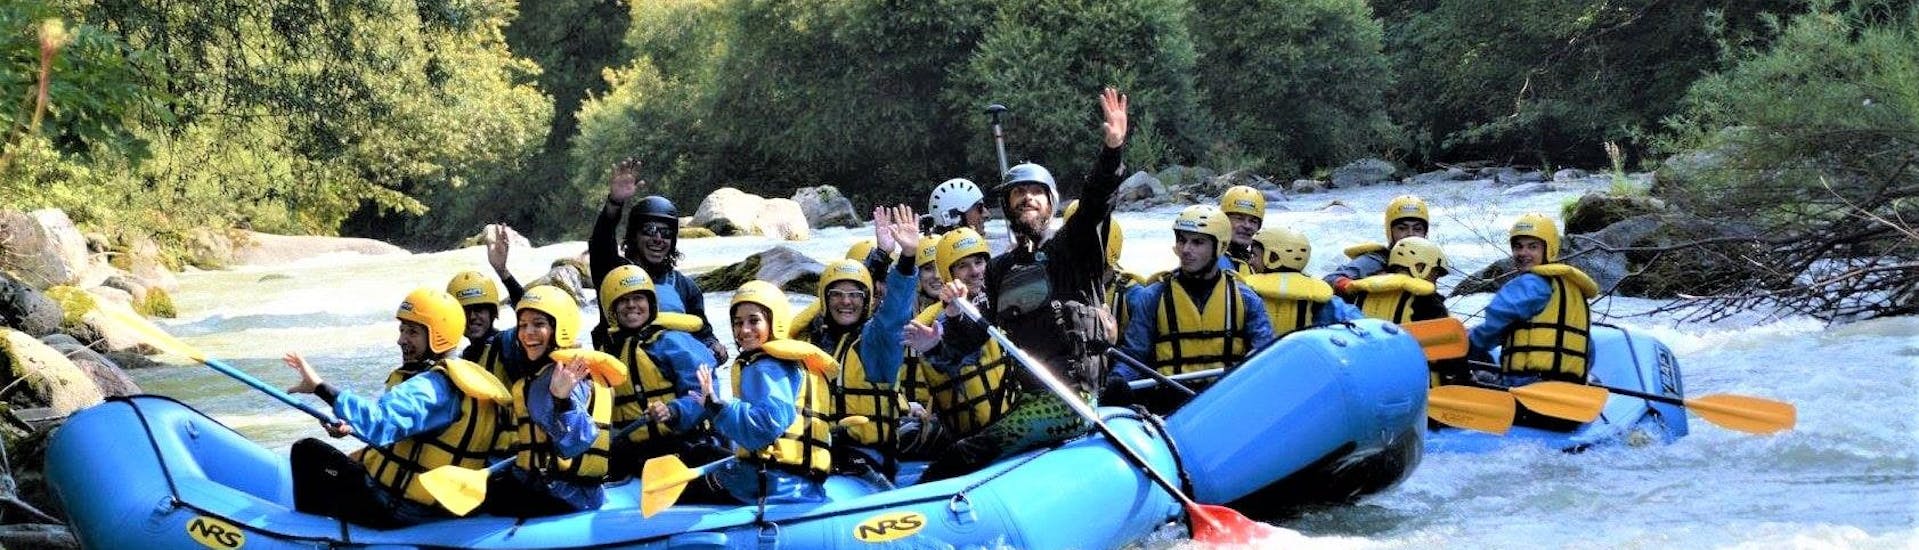 Einige Teilnehmer der von X Raft Val di Sole organisierten Rafting Tour "Rio Claro" lächeln in die Kamera.